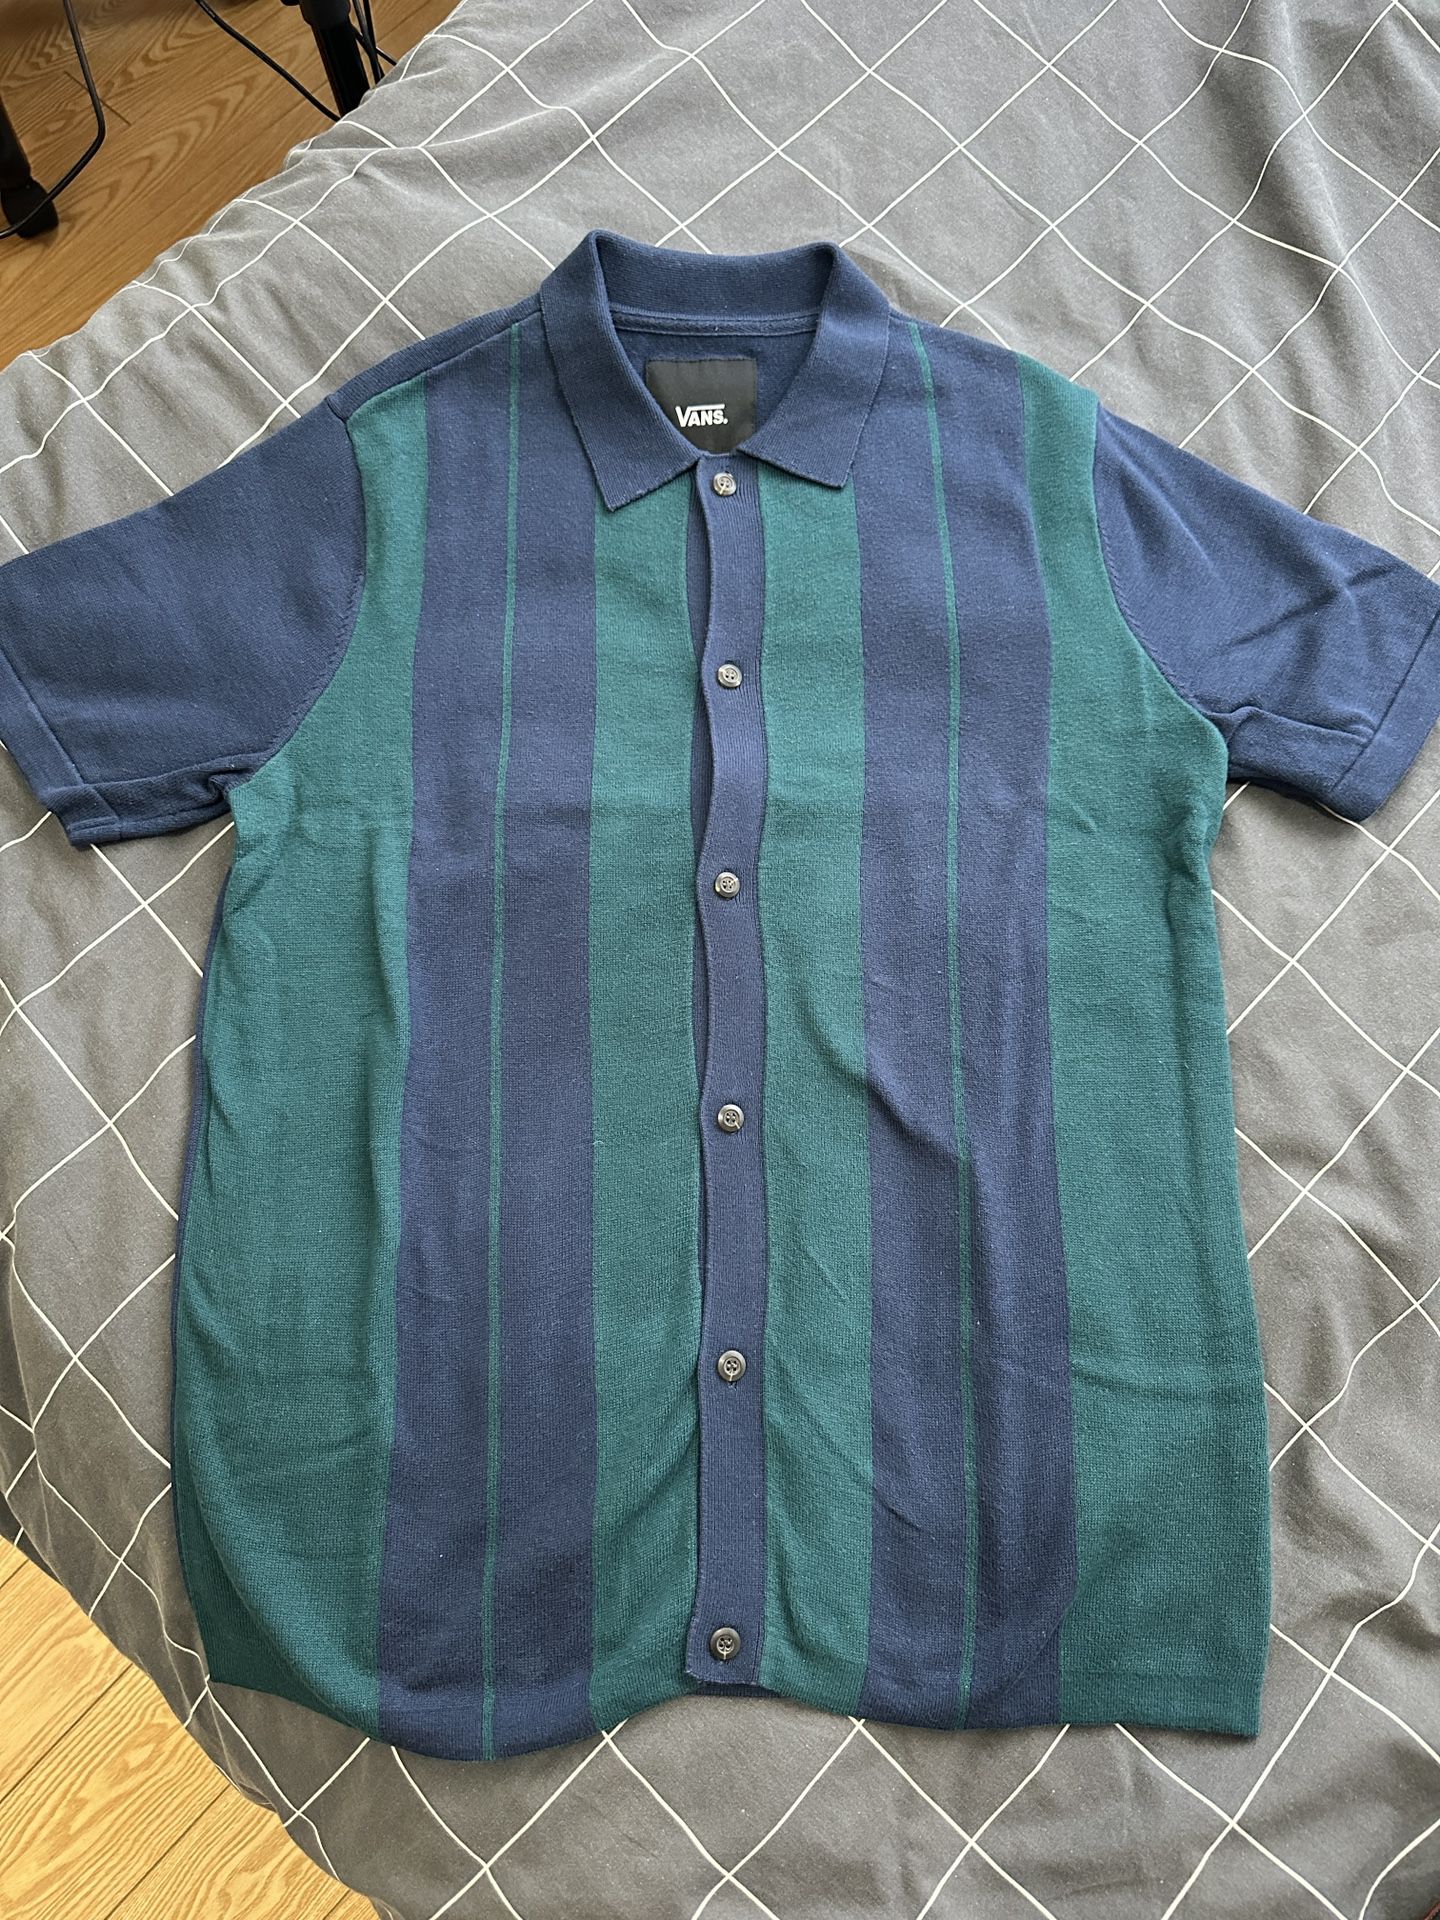  Vans Men’s Polo Shirt Size S 